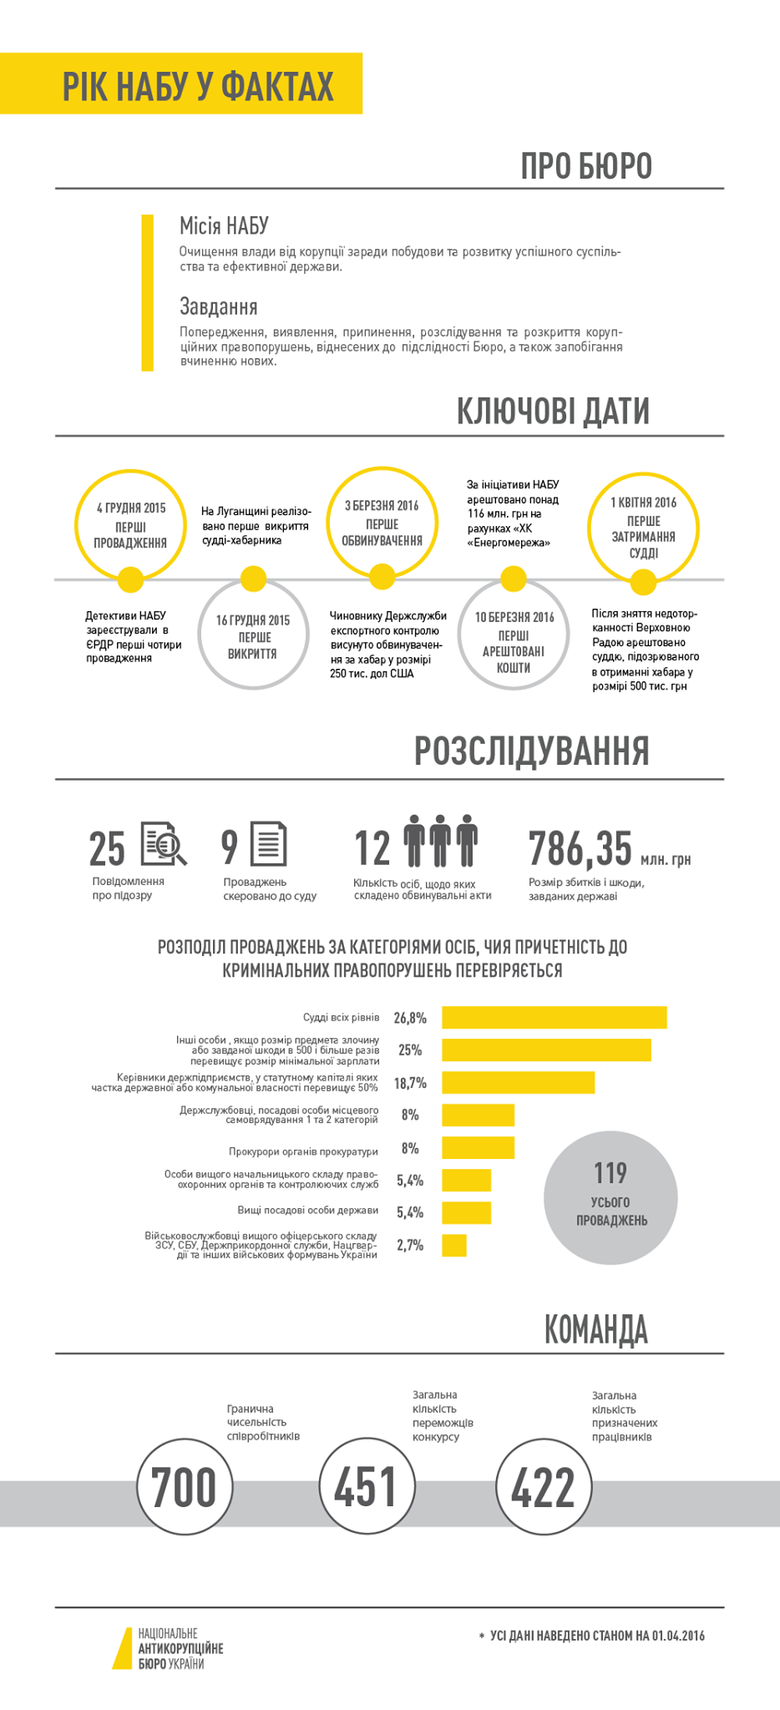 Національне антикорупційне бюро України станом на 1 квітня 2016 року порушило 119 кримінальних проваджень.